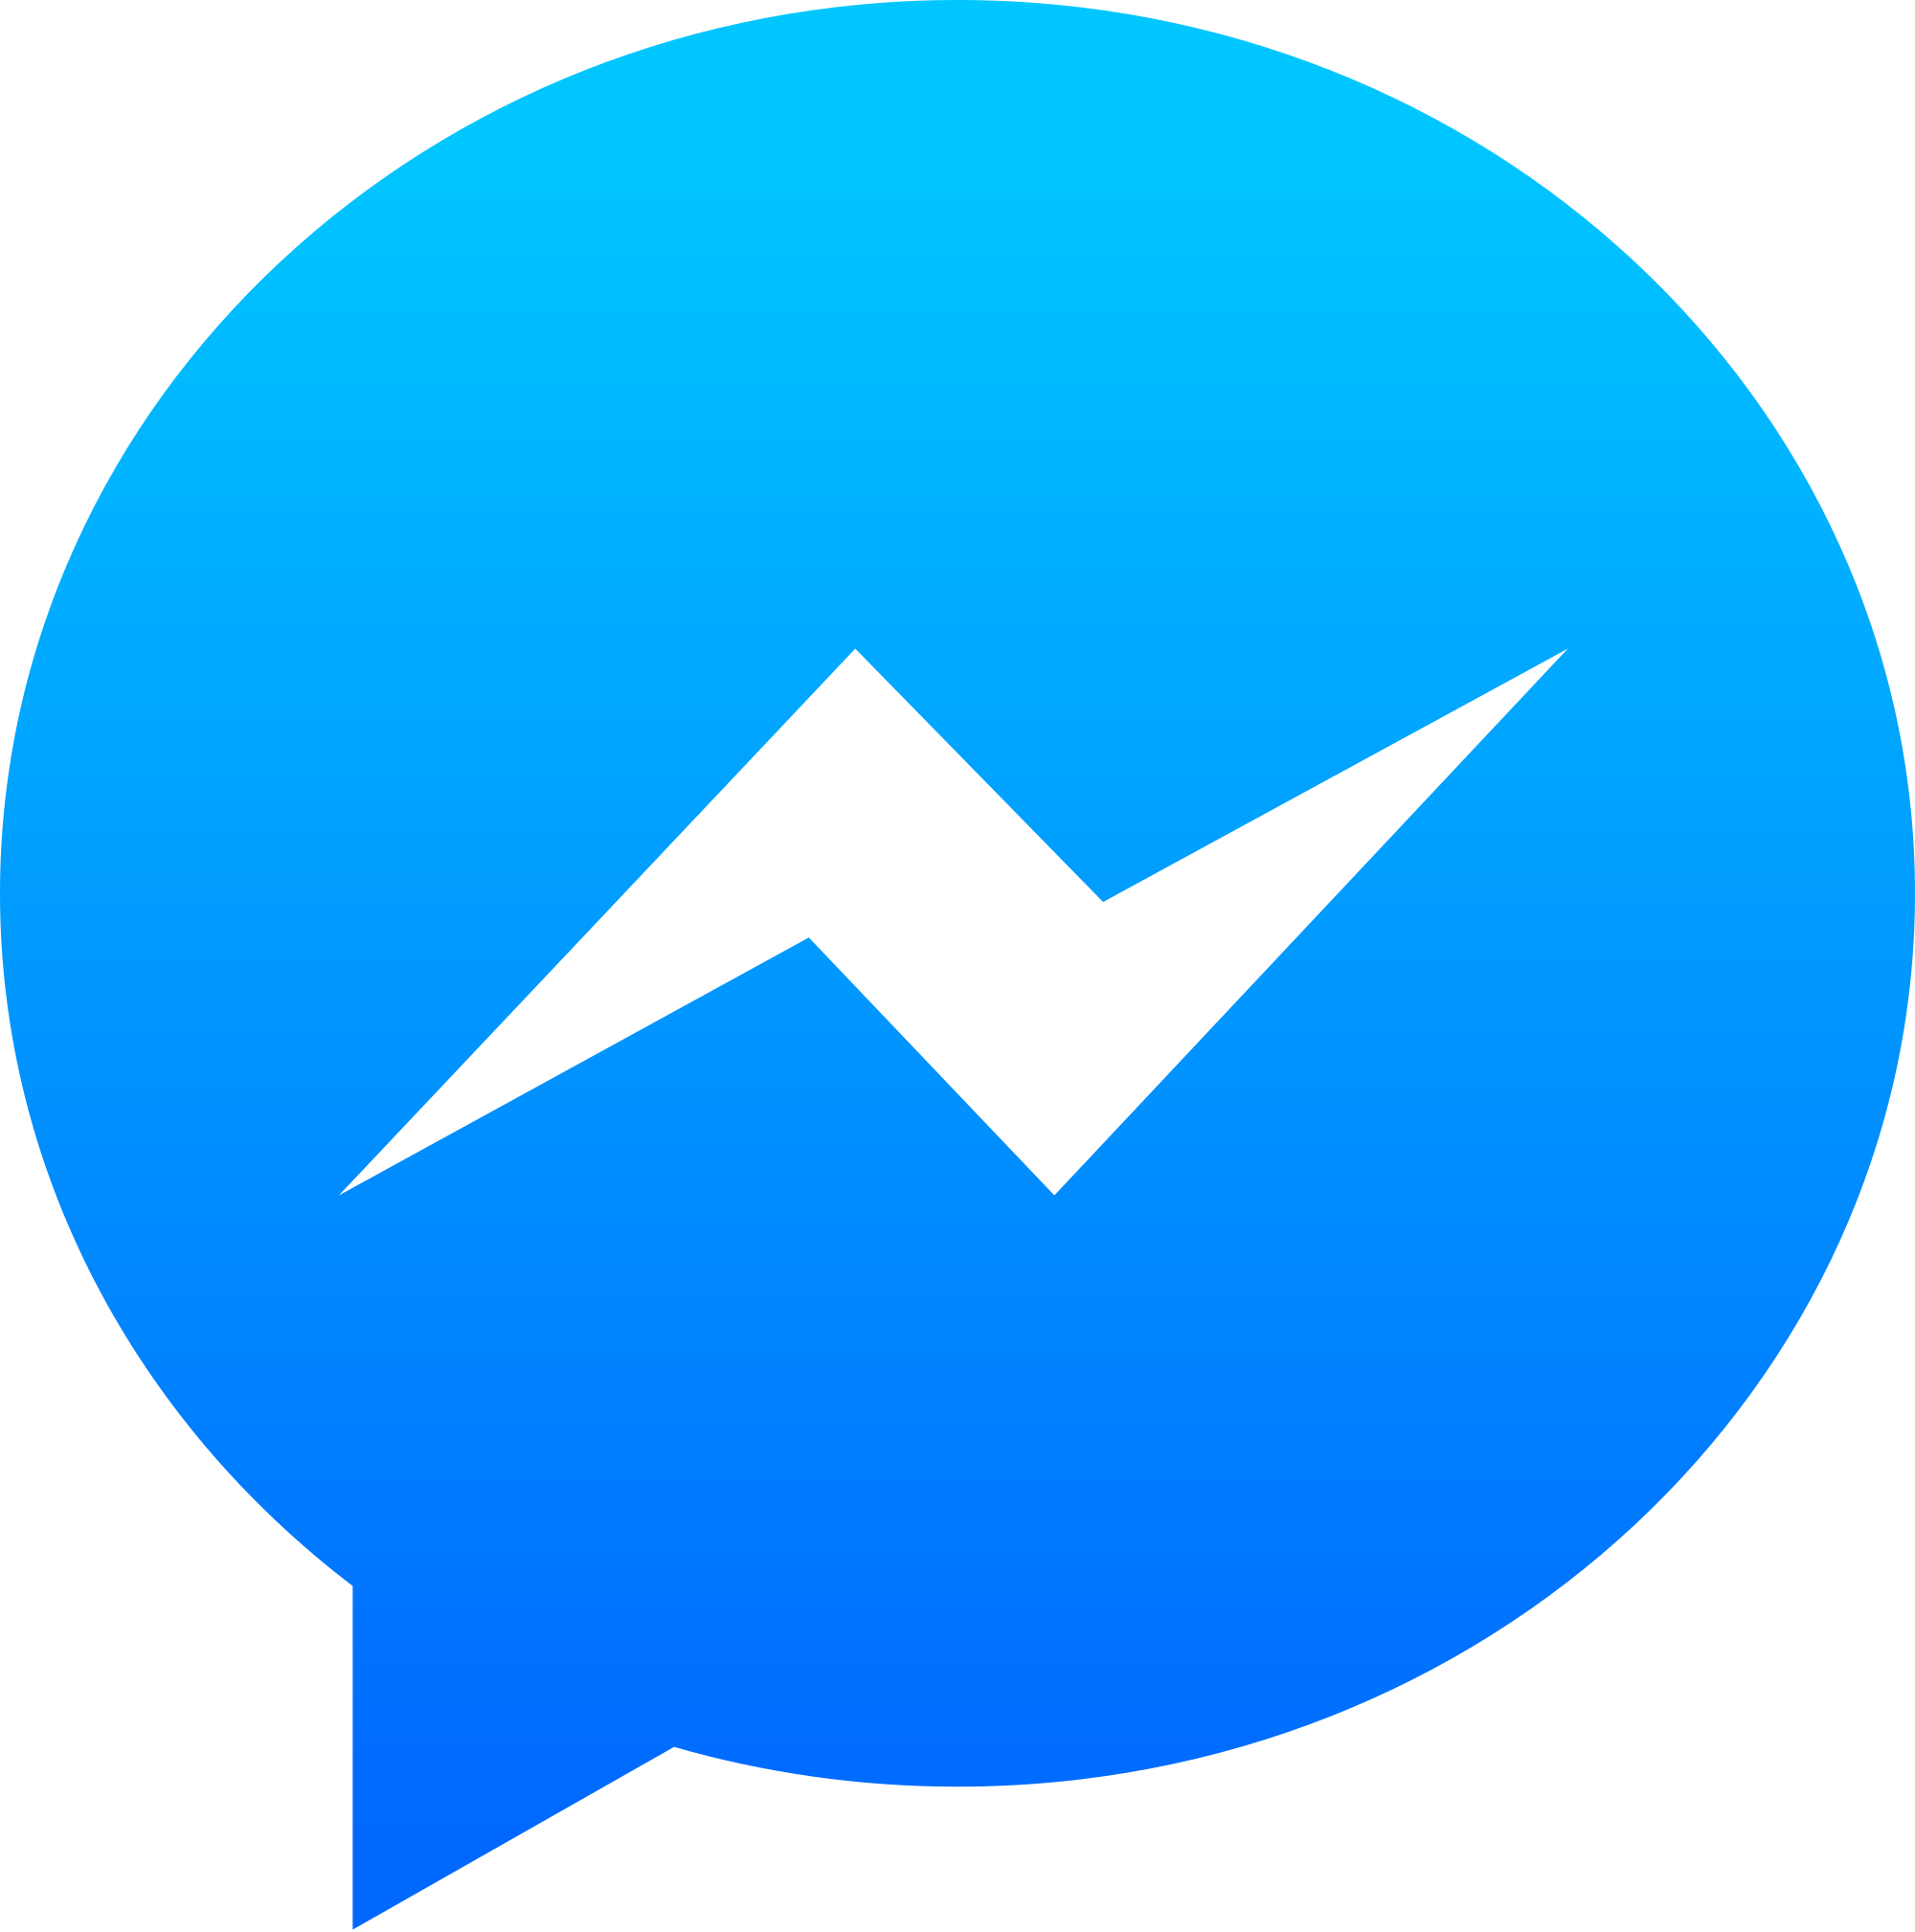 Facebook Messenger: Comment résoudre les problèmes de connexion et autres  bugs